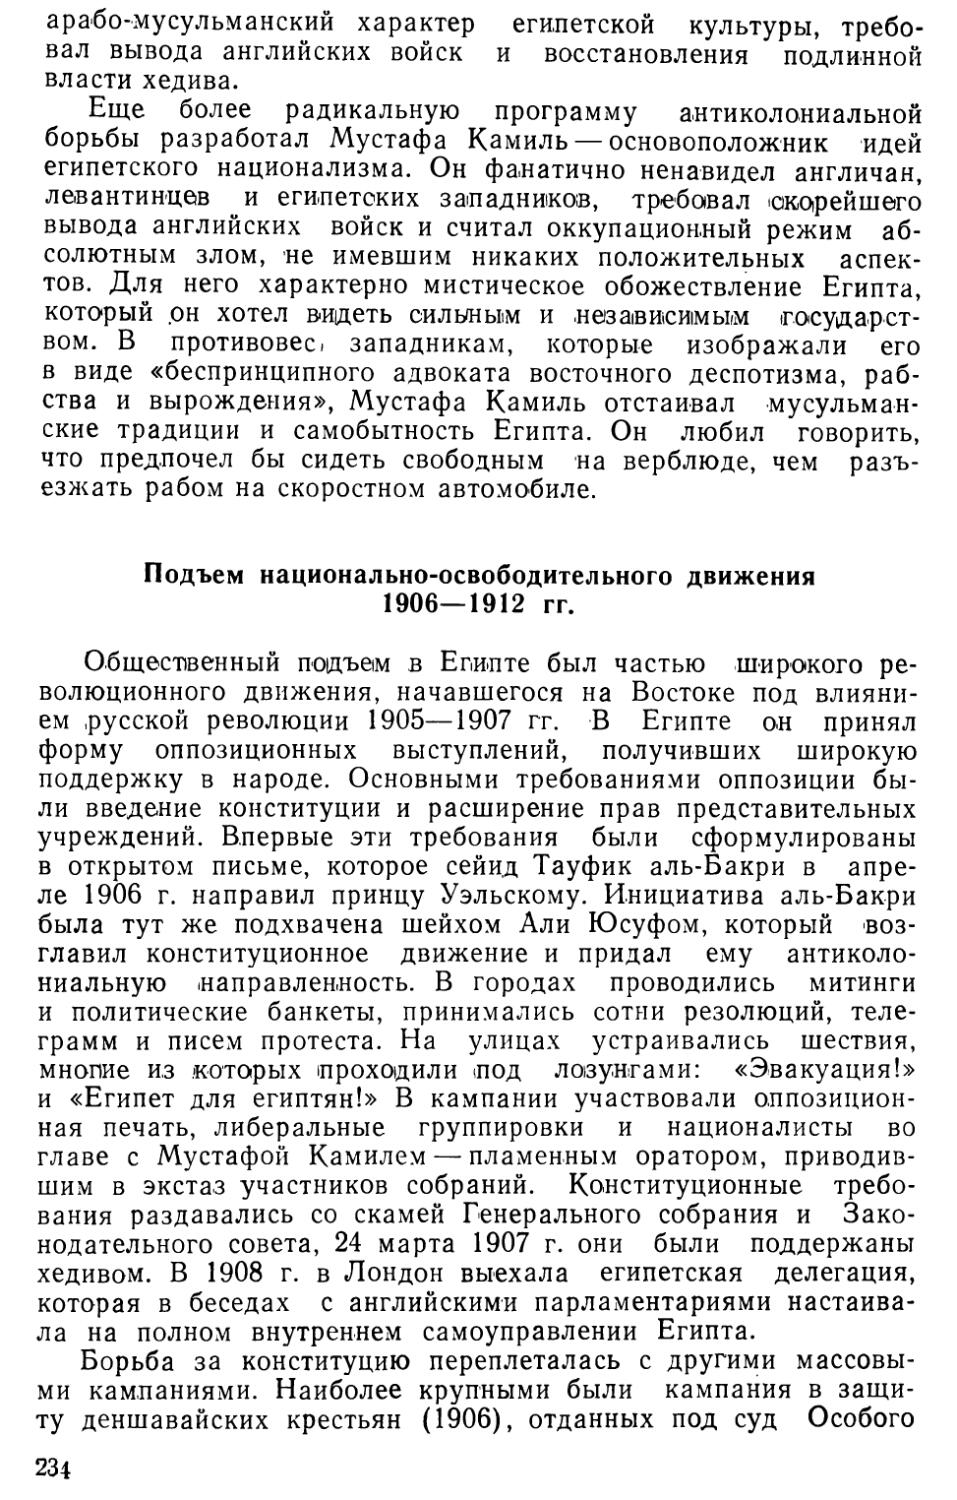 Подъем национально-освободительного движения 1906—1912 гг.